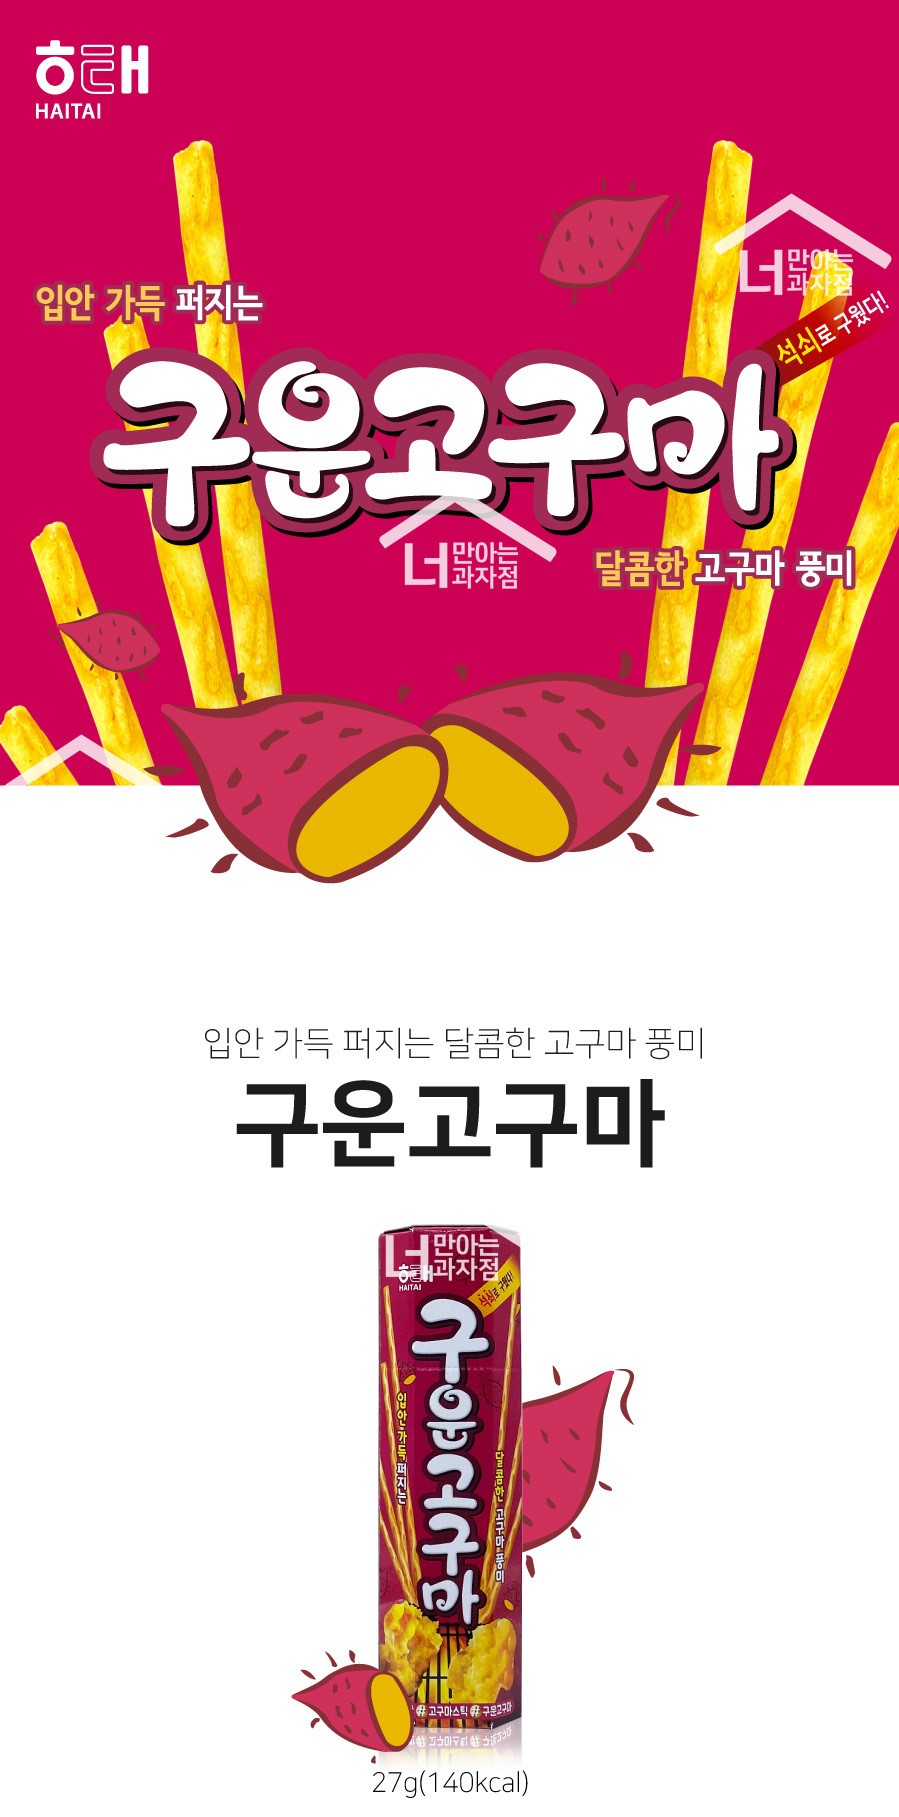 韓國食品-[해태] 구운고구마 27g